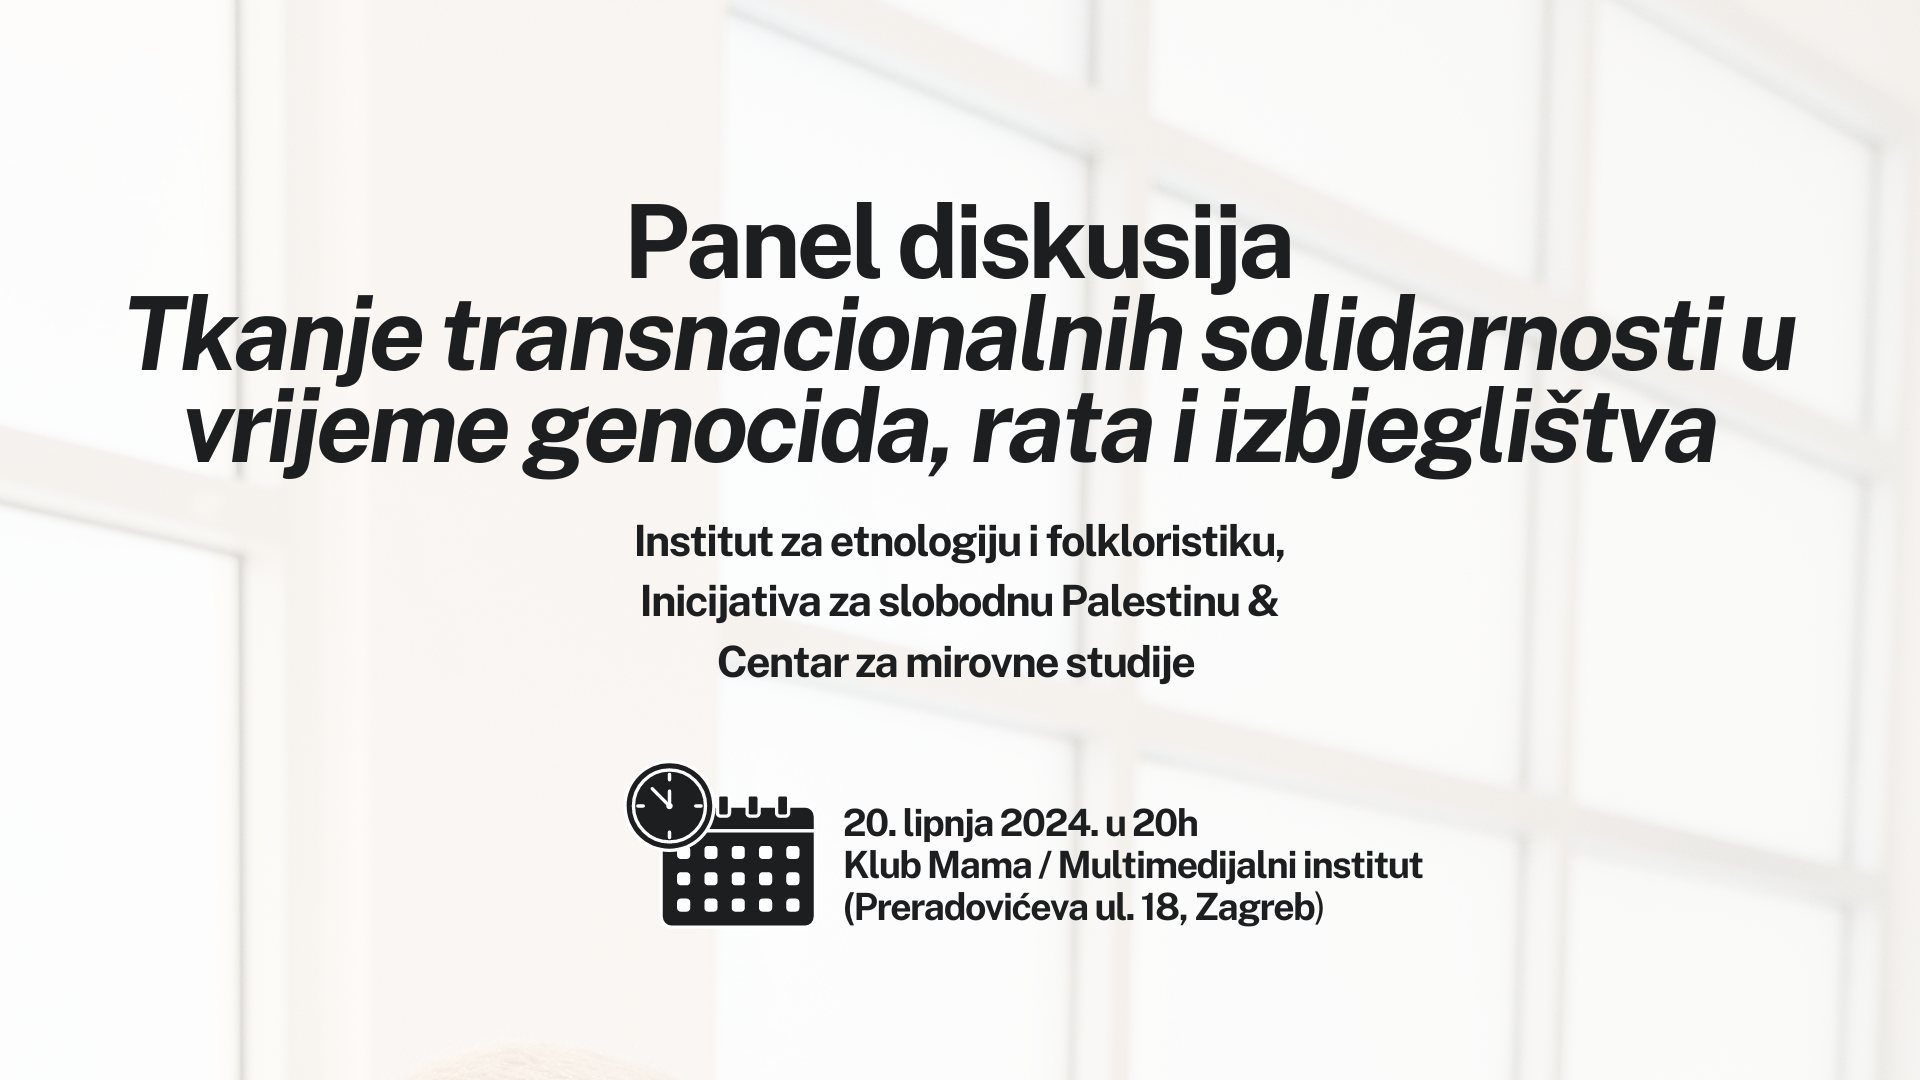 Panel diskusija: Tkanje transnacionalnih solidarnosti u vrijeme genocida i izbjeglištva